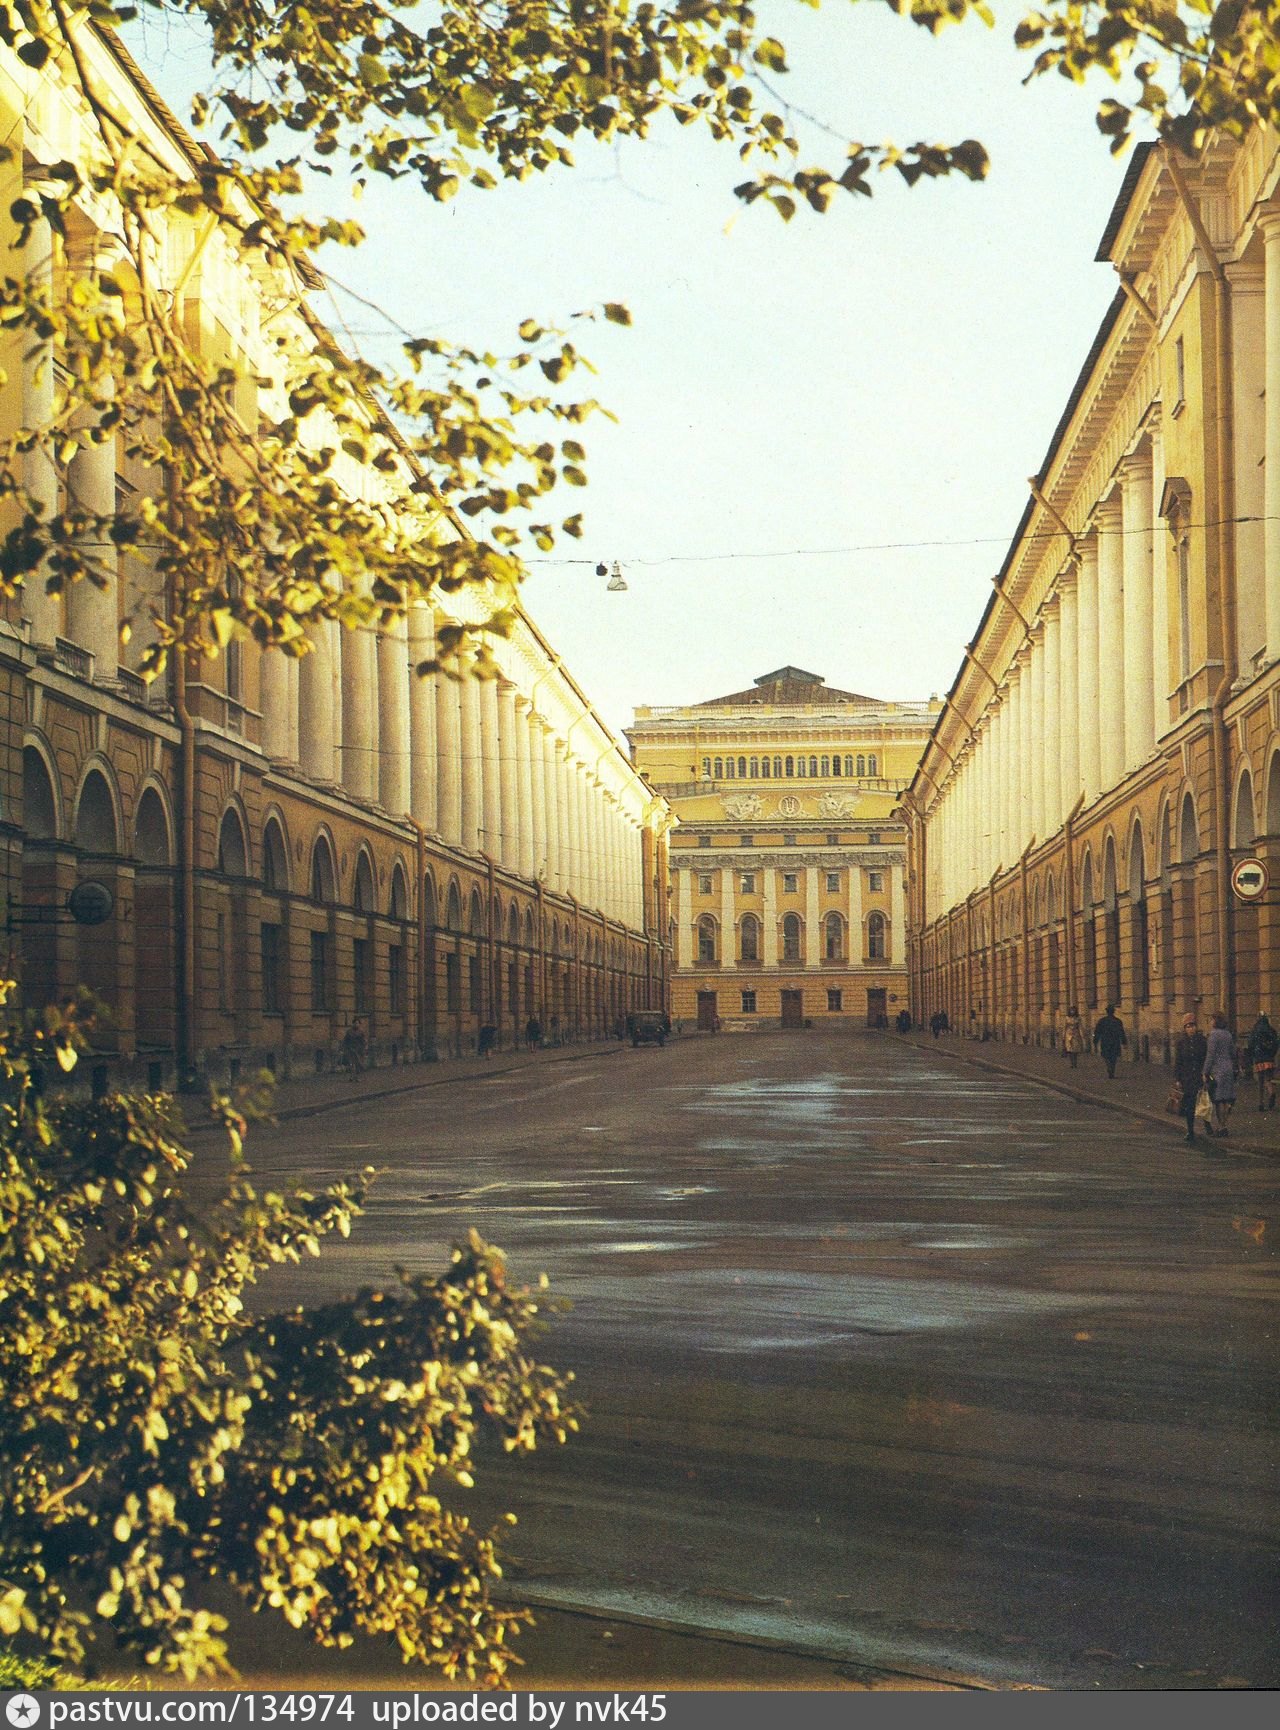 Улица зодчего росси в санкт петербурге фото